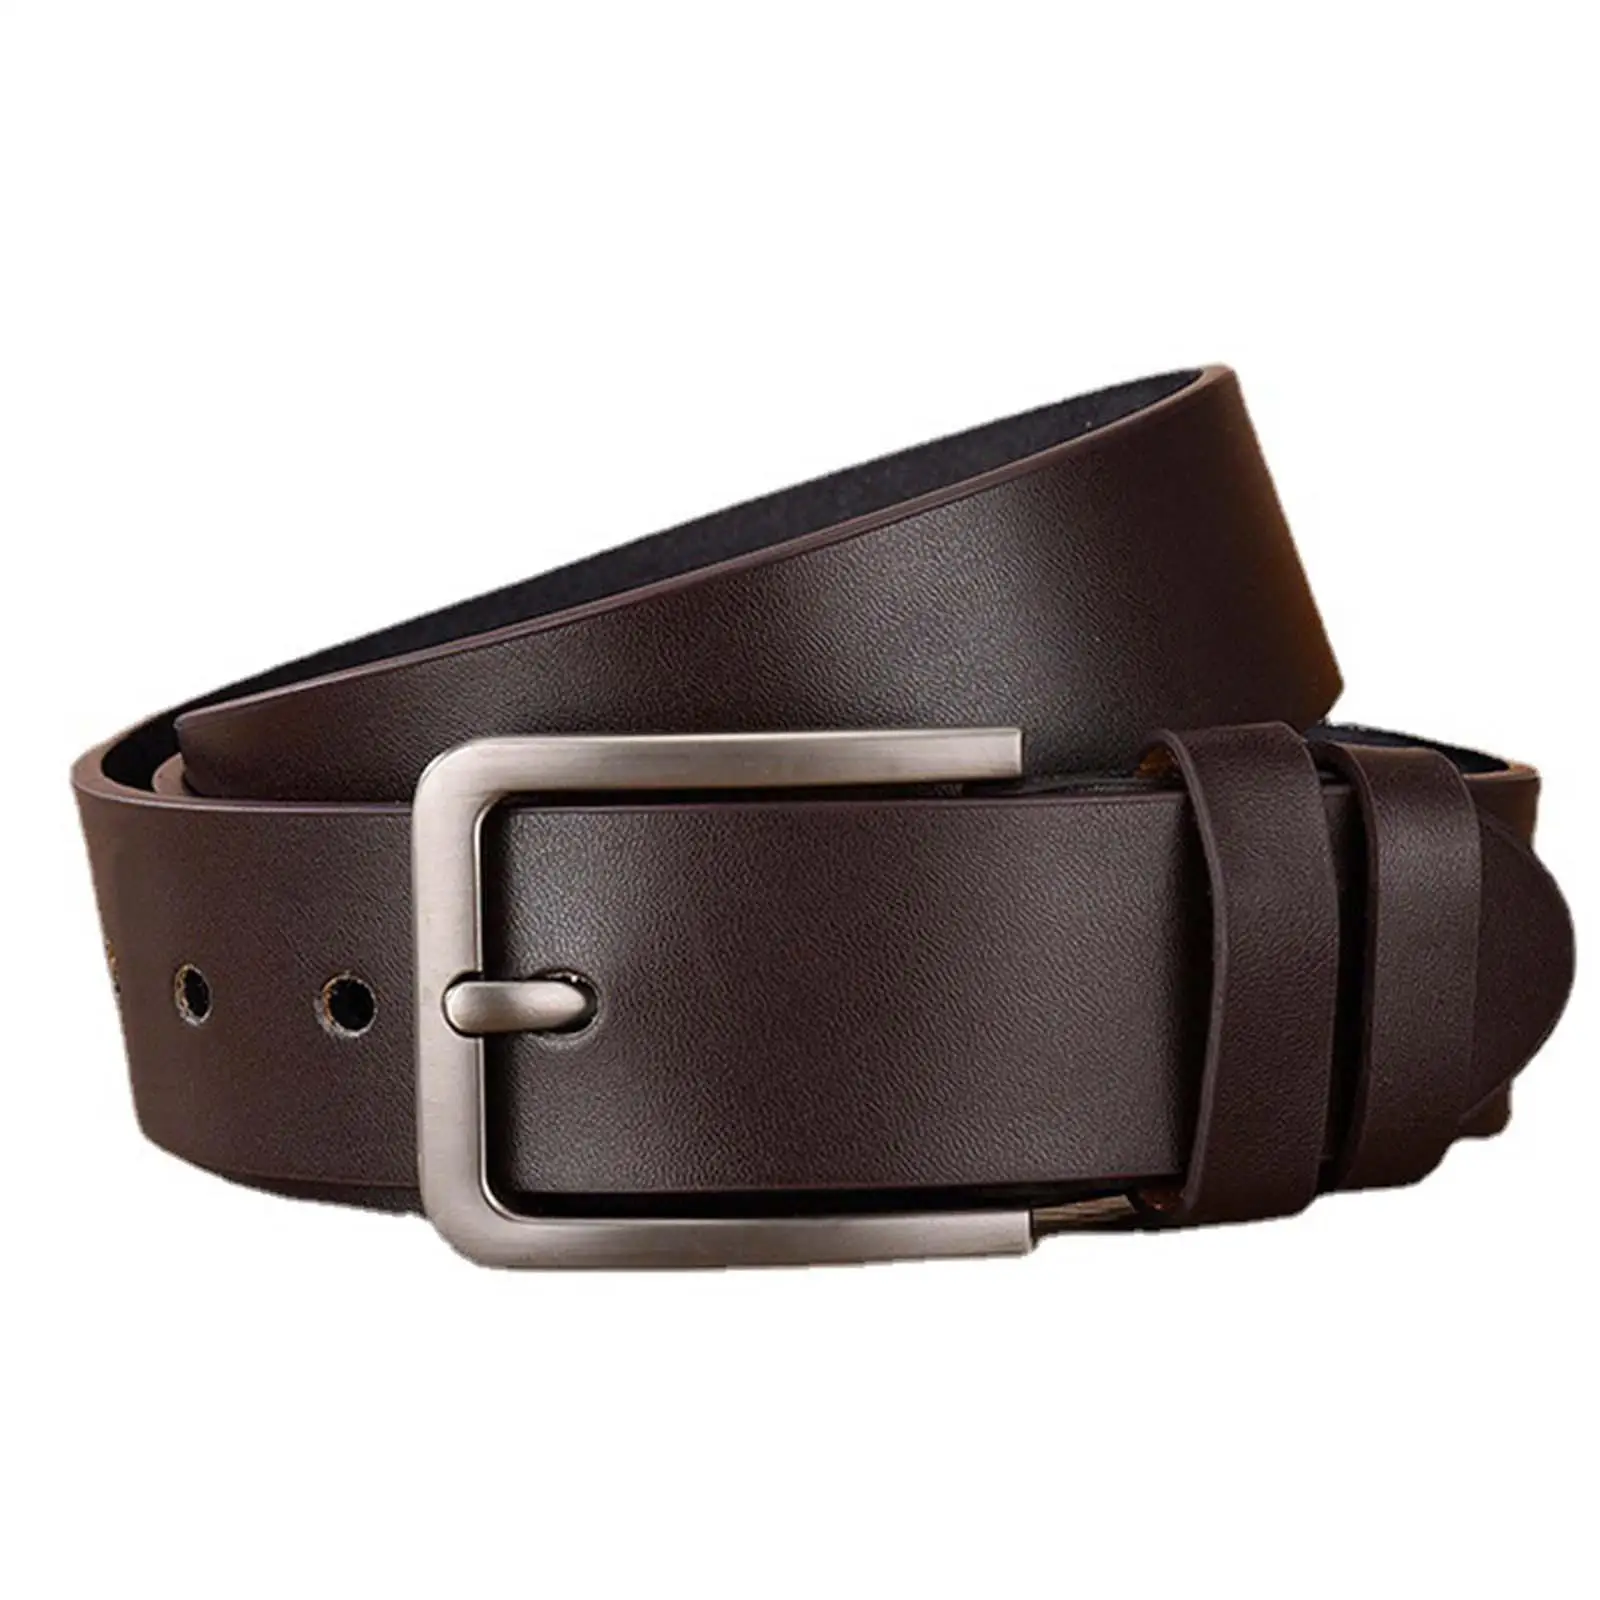 Men Belt Waist Strap PU Leather Belt Waistband for Jeans Accessories Business Uniform